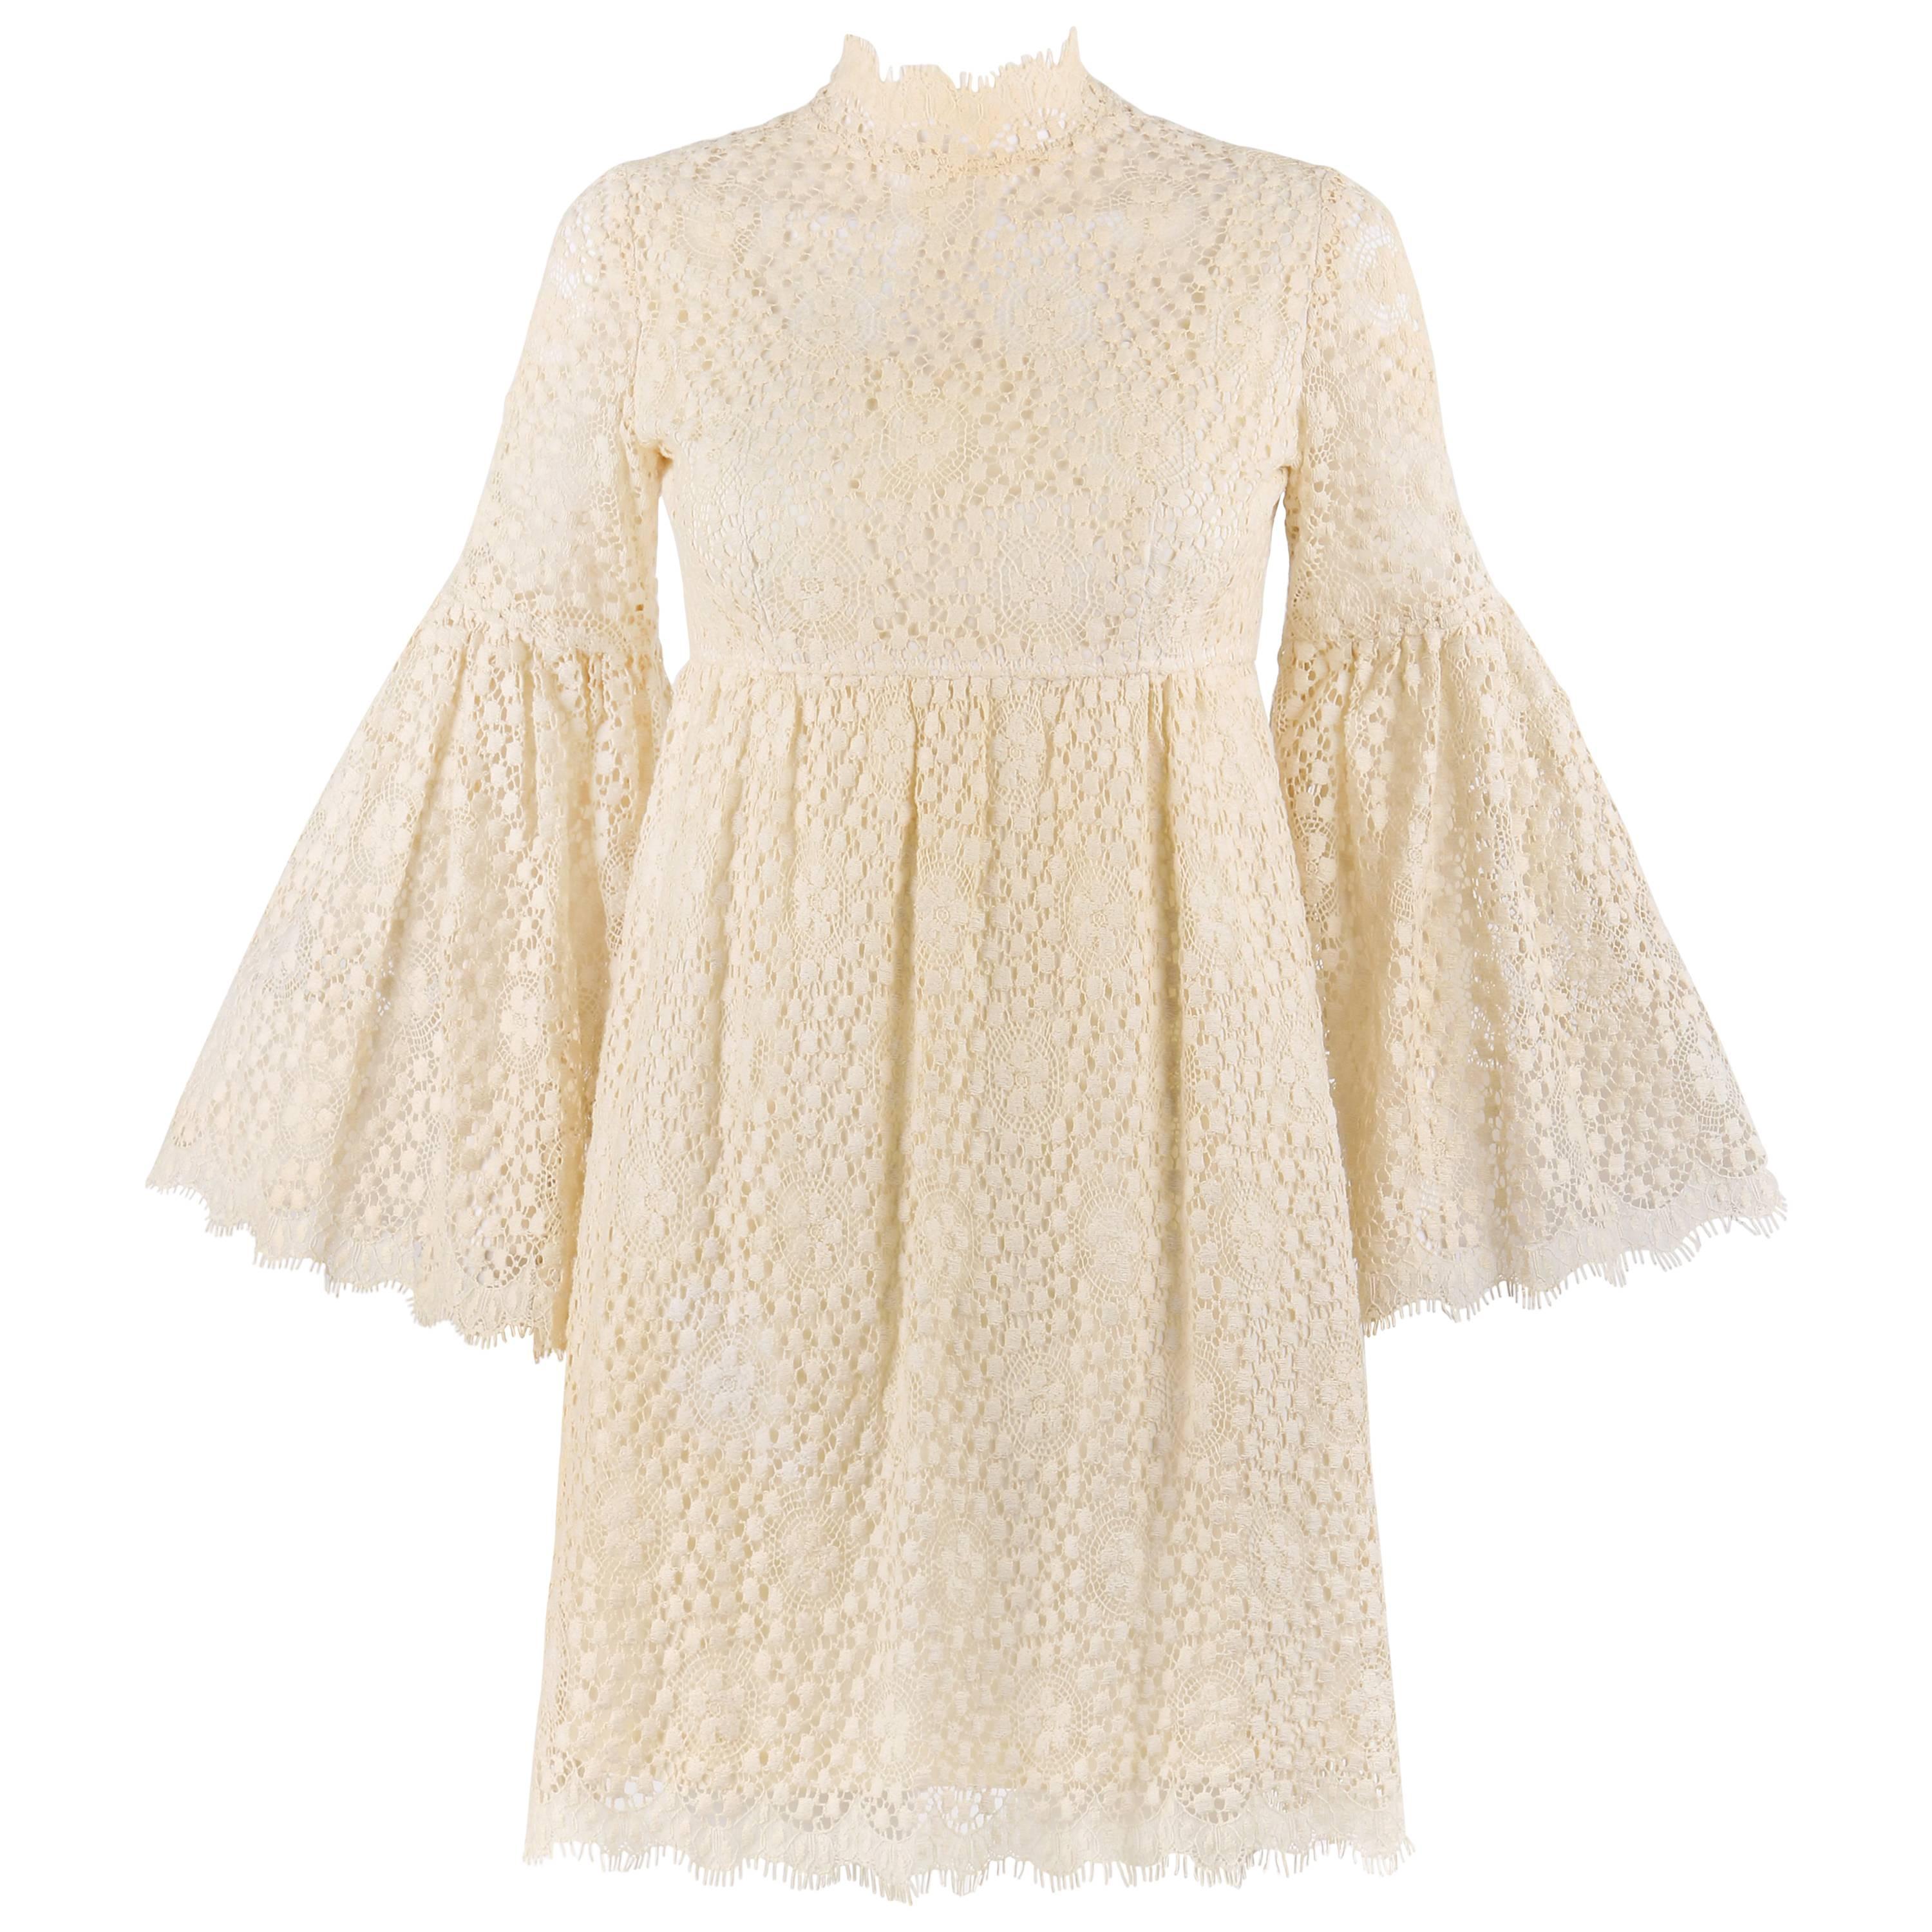 PARC JRS Petite c.1960's Cream Floral Crochet Lace Flounce Sleeve Babydoll Dress